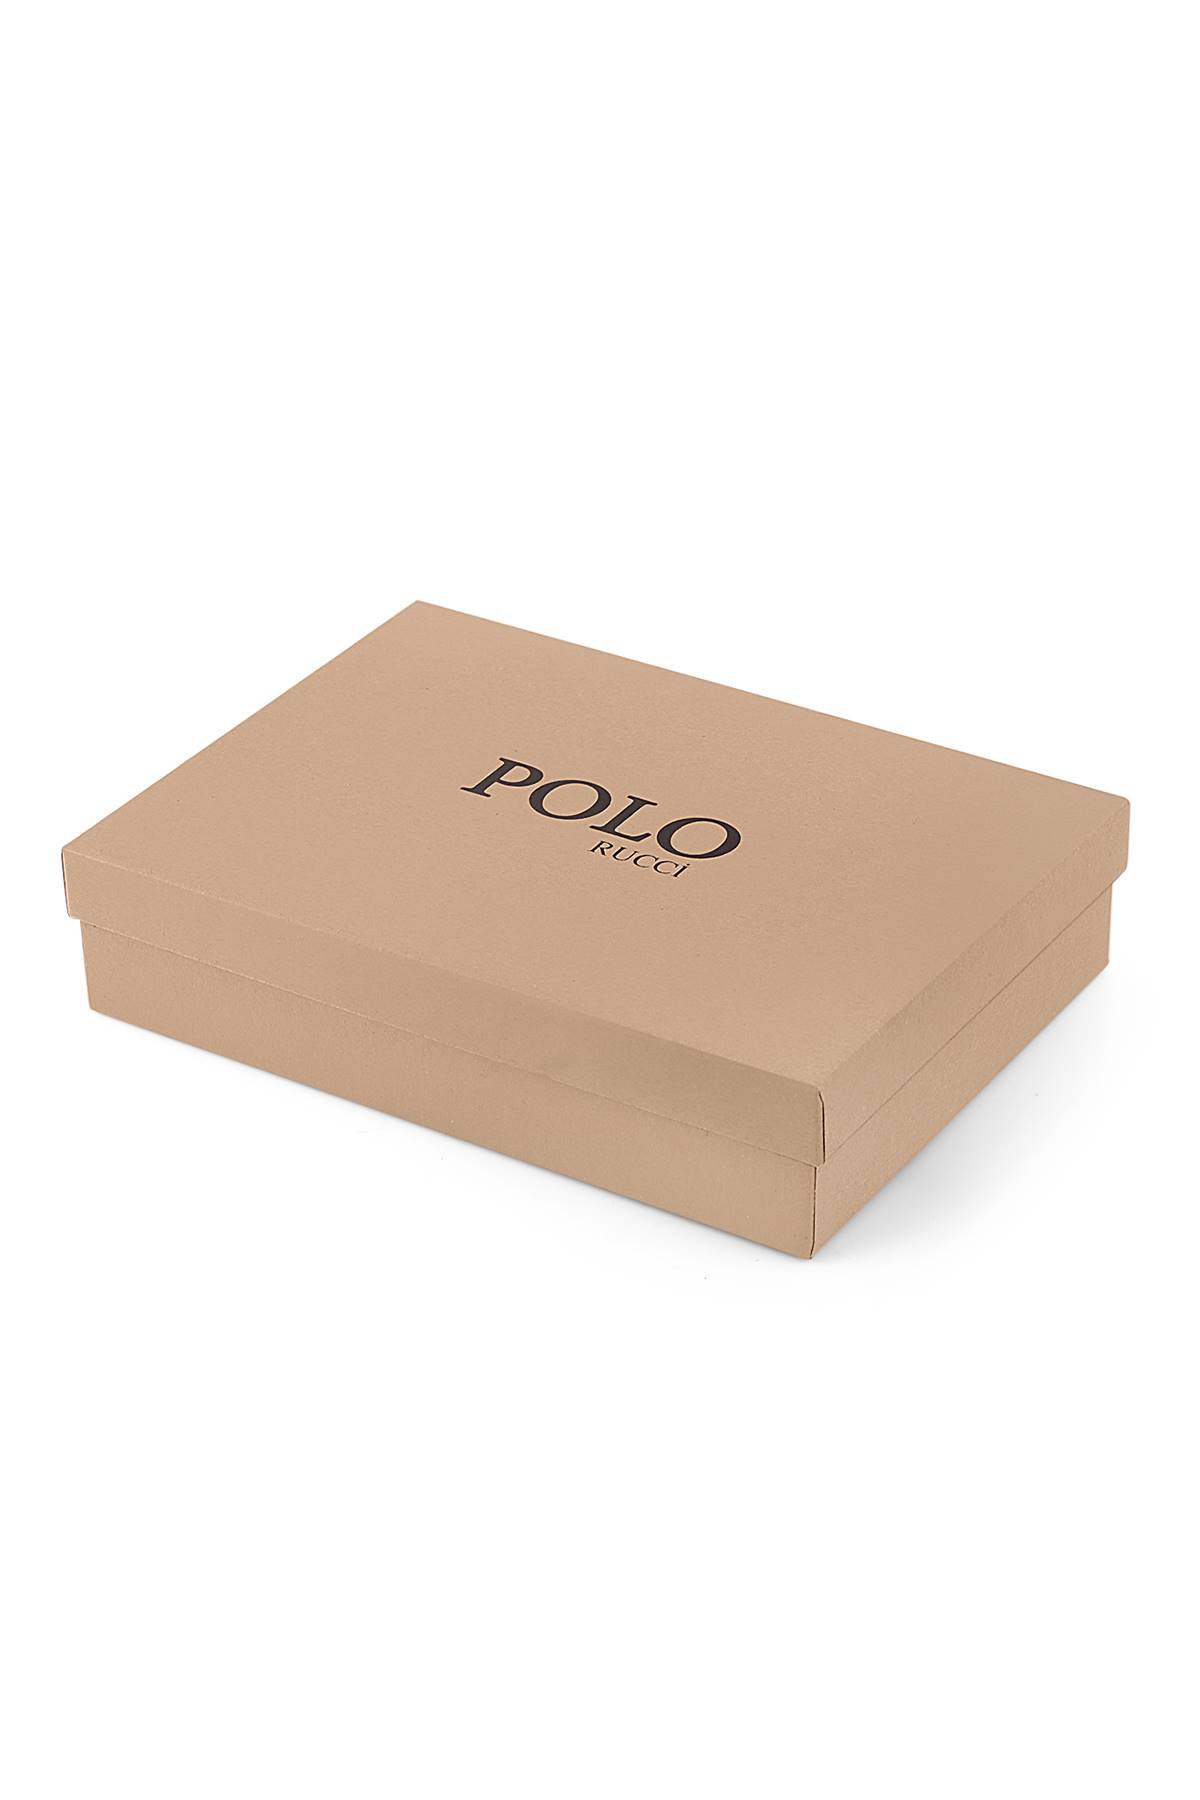 Polo Rucci Kişiye Özel Erkek Hediye Paketli Kapıda Ödeme       SETE-3016-SC